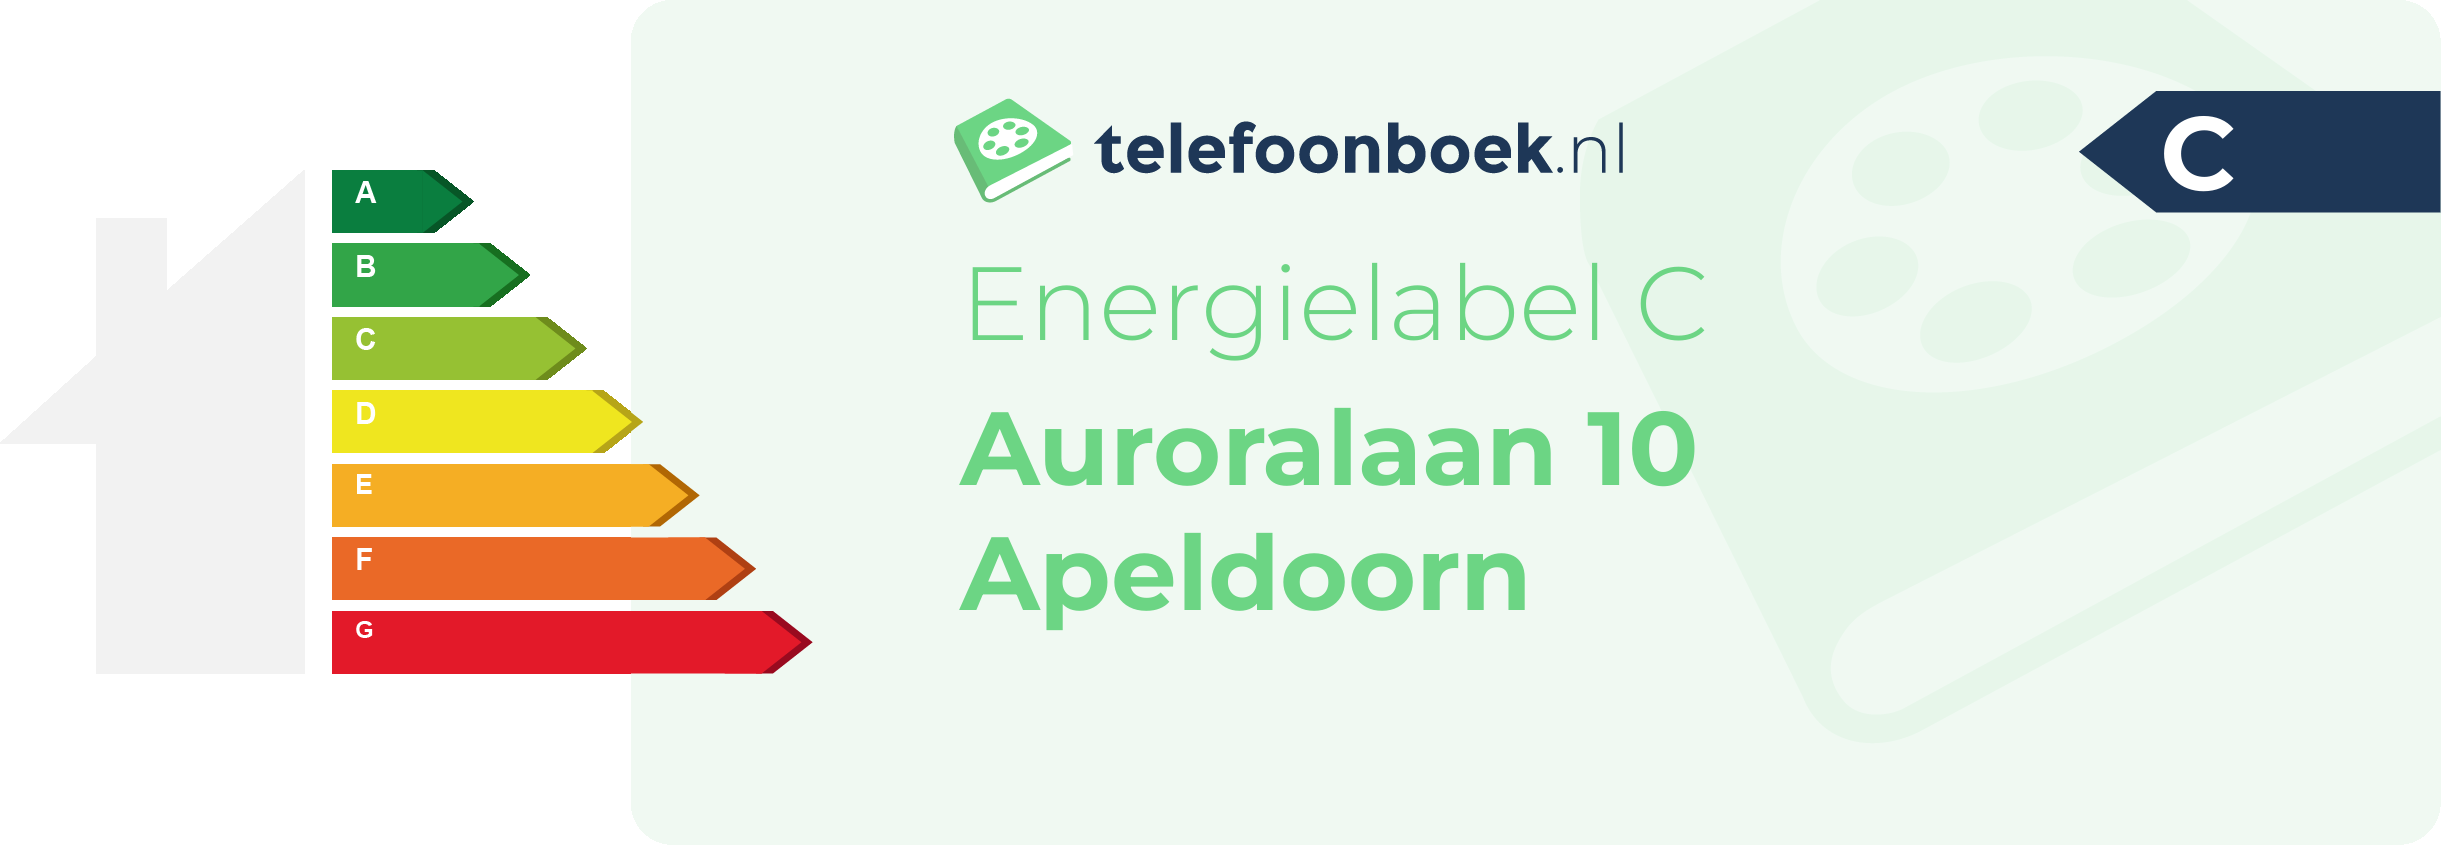 Energielabel Auroralaan 10 Apeldoorn